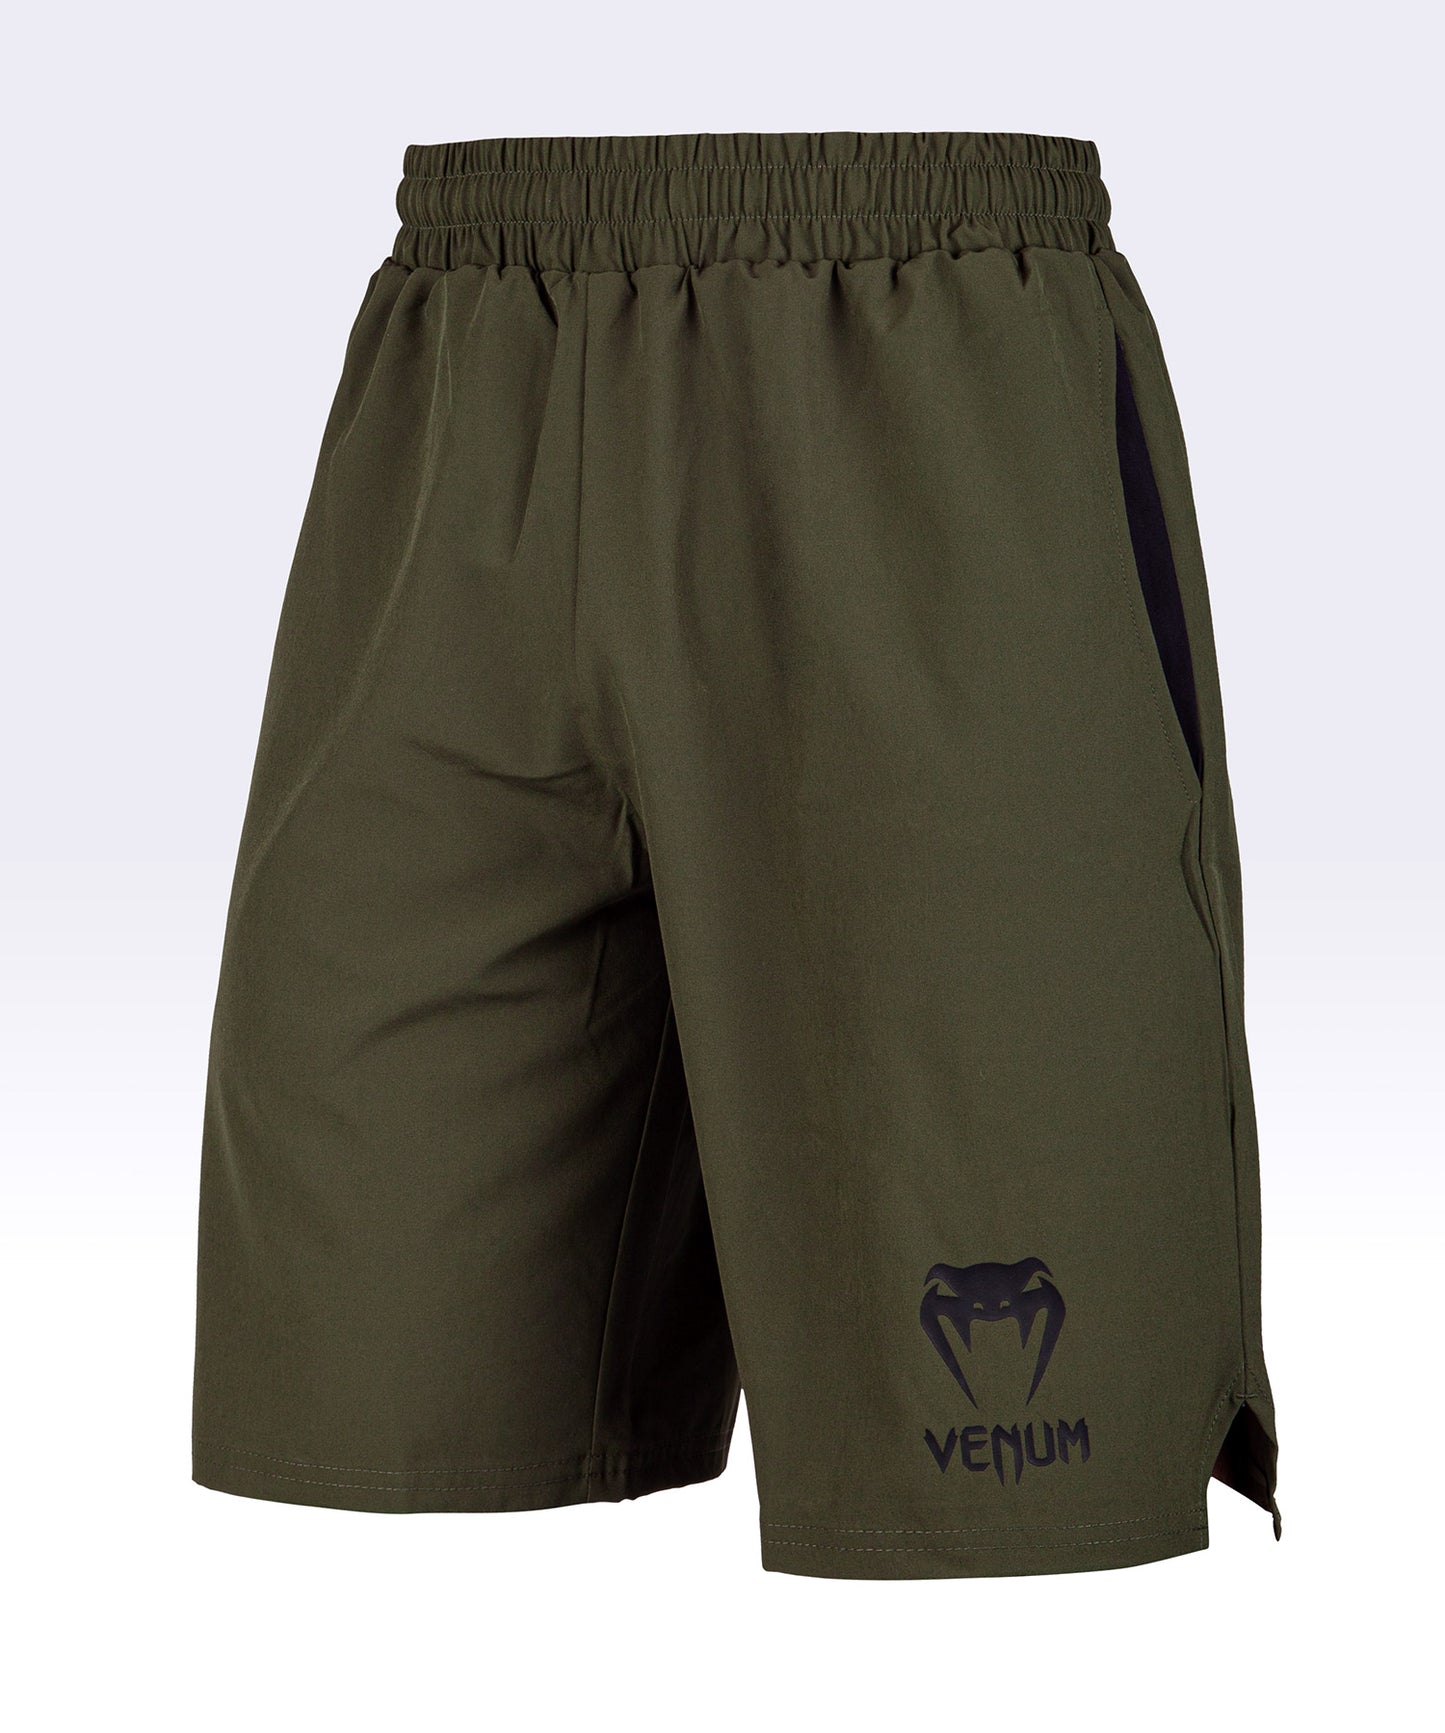 Pantalón corto de entrenamiento Venum Classic - Kaki